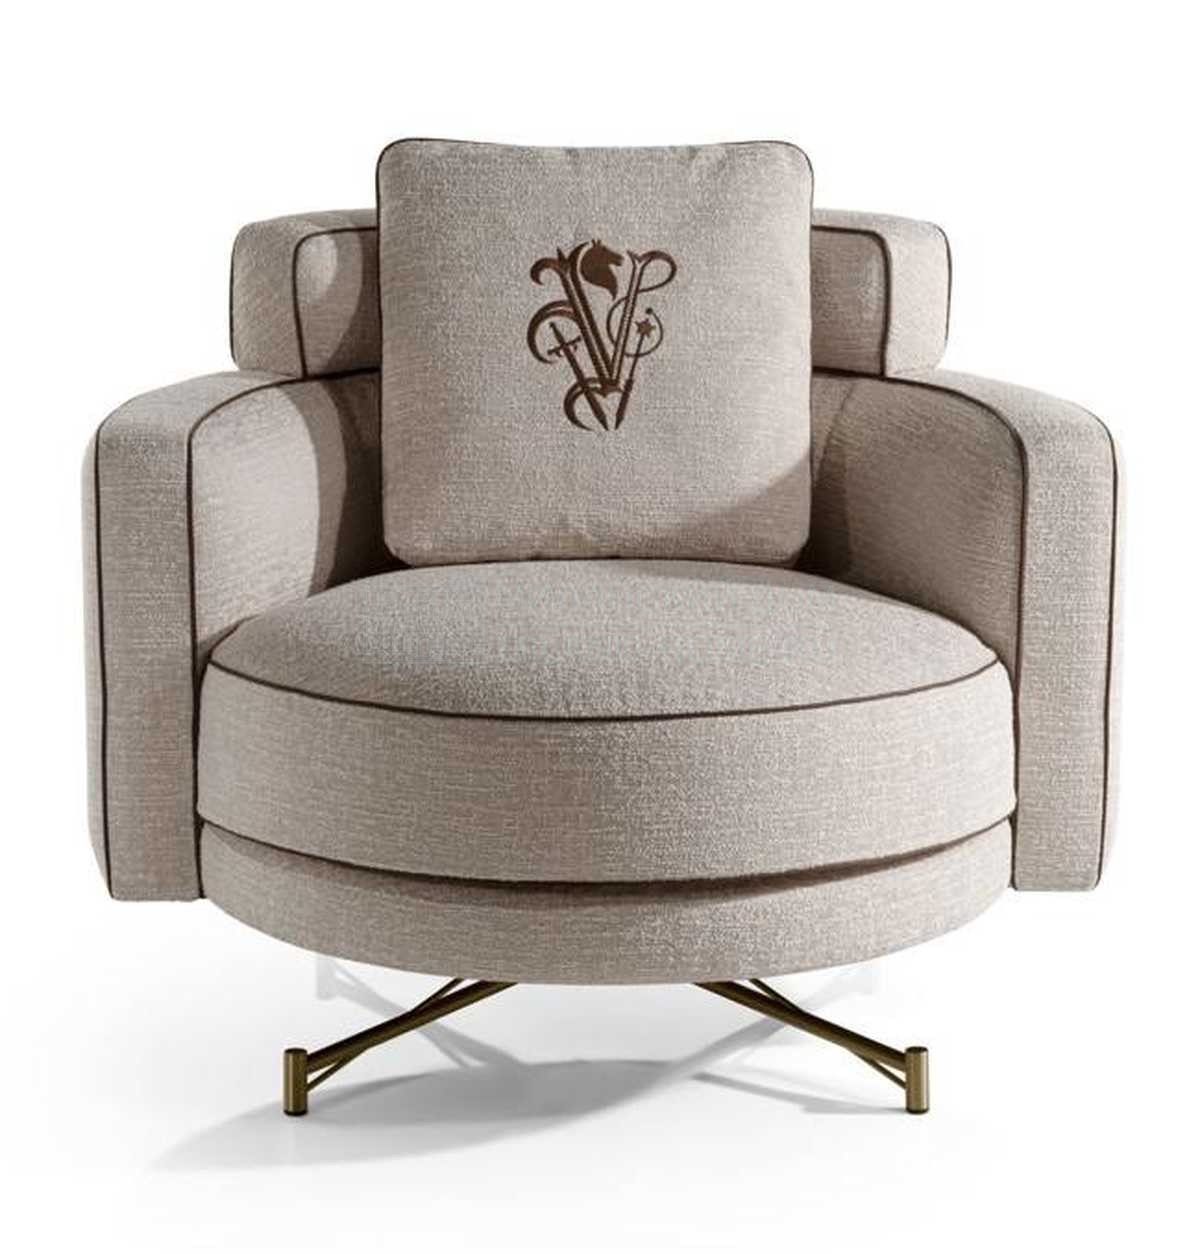 Круглое кресло Khamma armchair из Италии фабрики IPE CAVALLI VISIONNAIRE